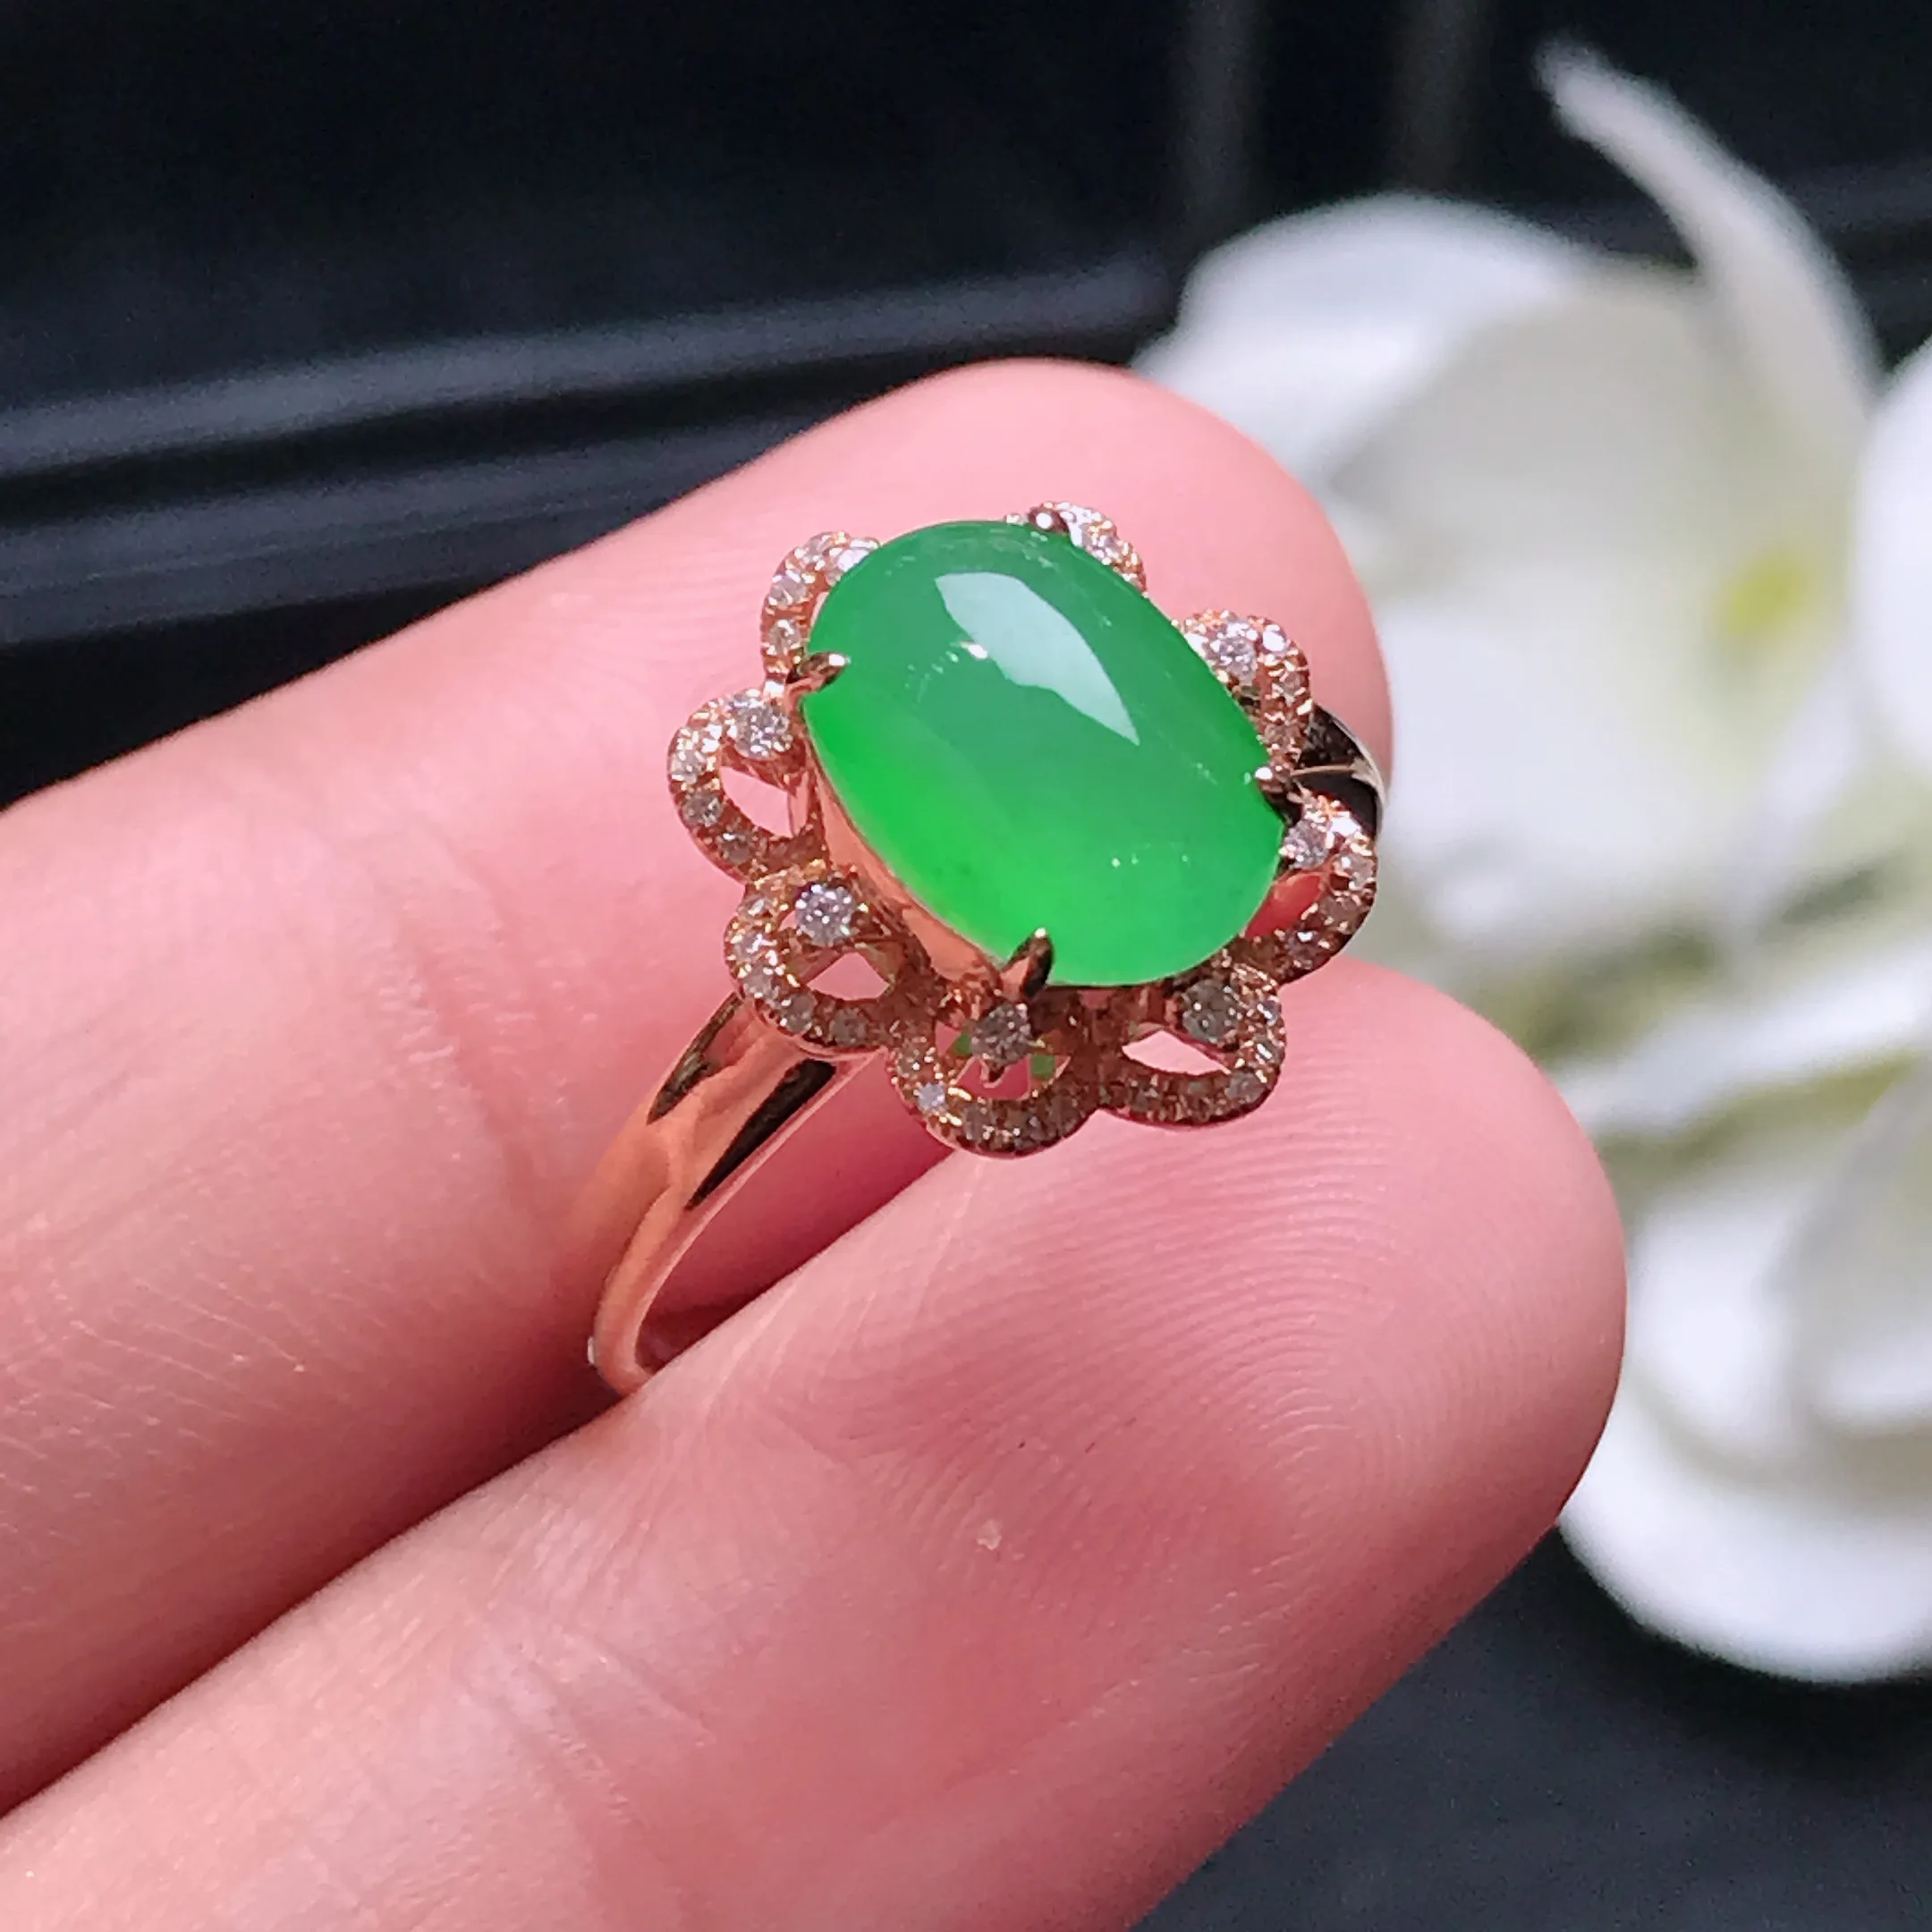 严选推荐戒指，老坑冰种满色绿蛋面戒指，18k金钻镶嵌而成，简约时尚，品相佳，佩戴效果佳，尽显气